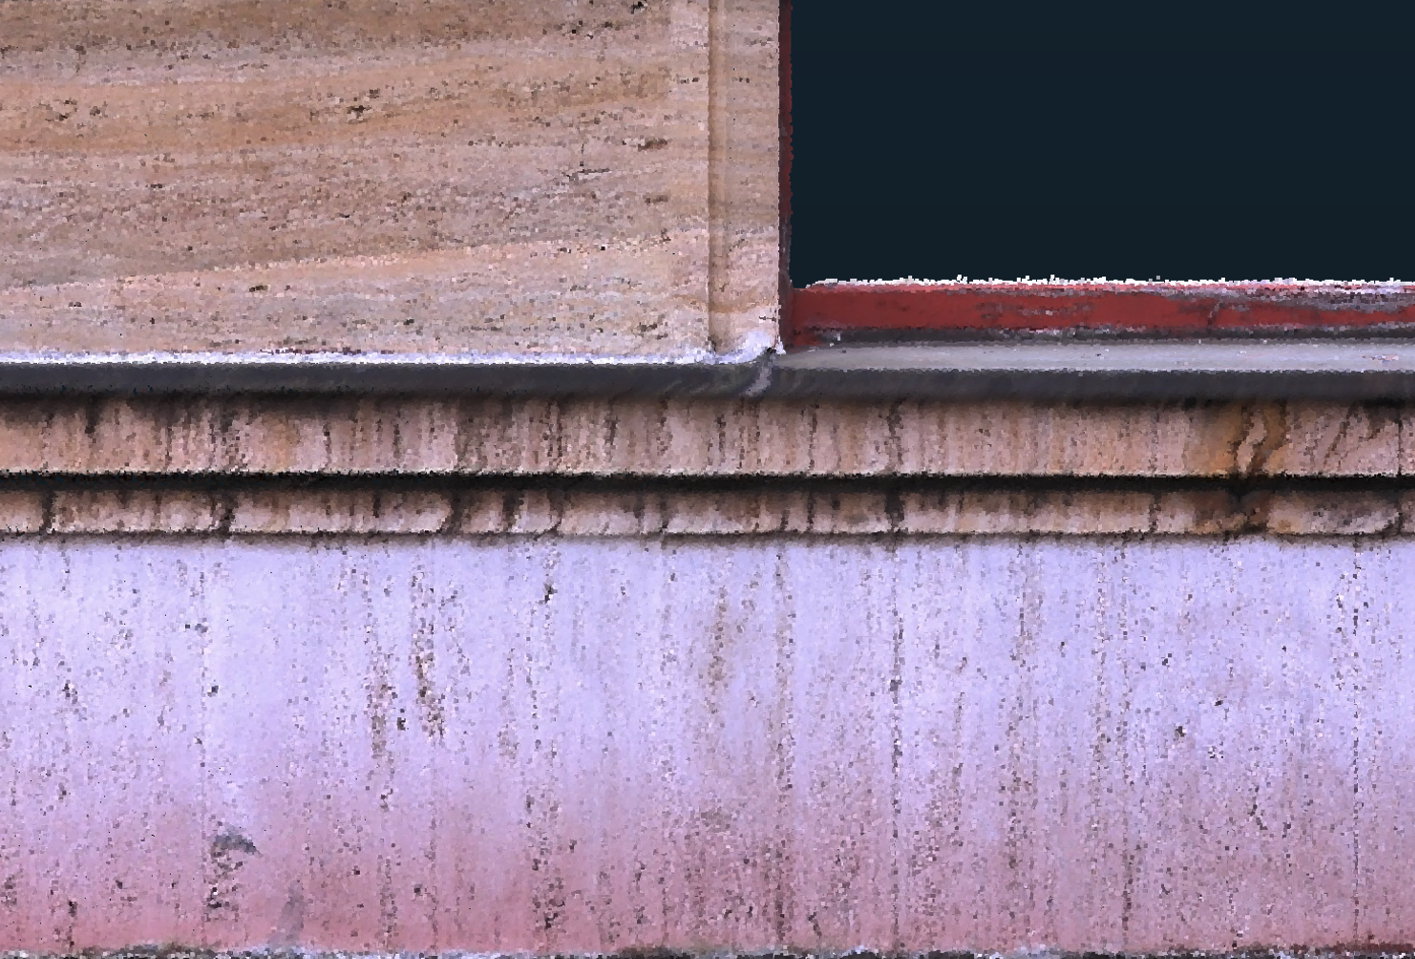 svislé spáry skoro neviditelné - Spárořez obkladu sto let staré fasády – 3D skenování